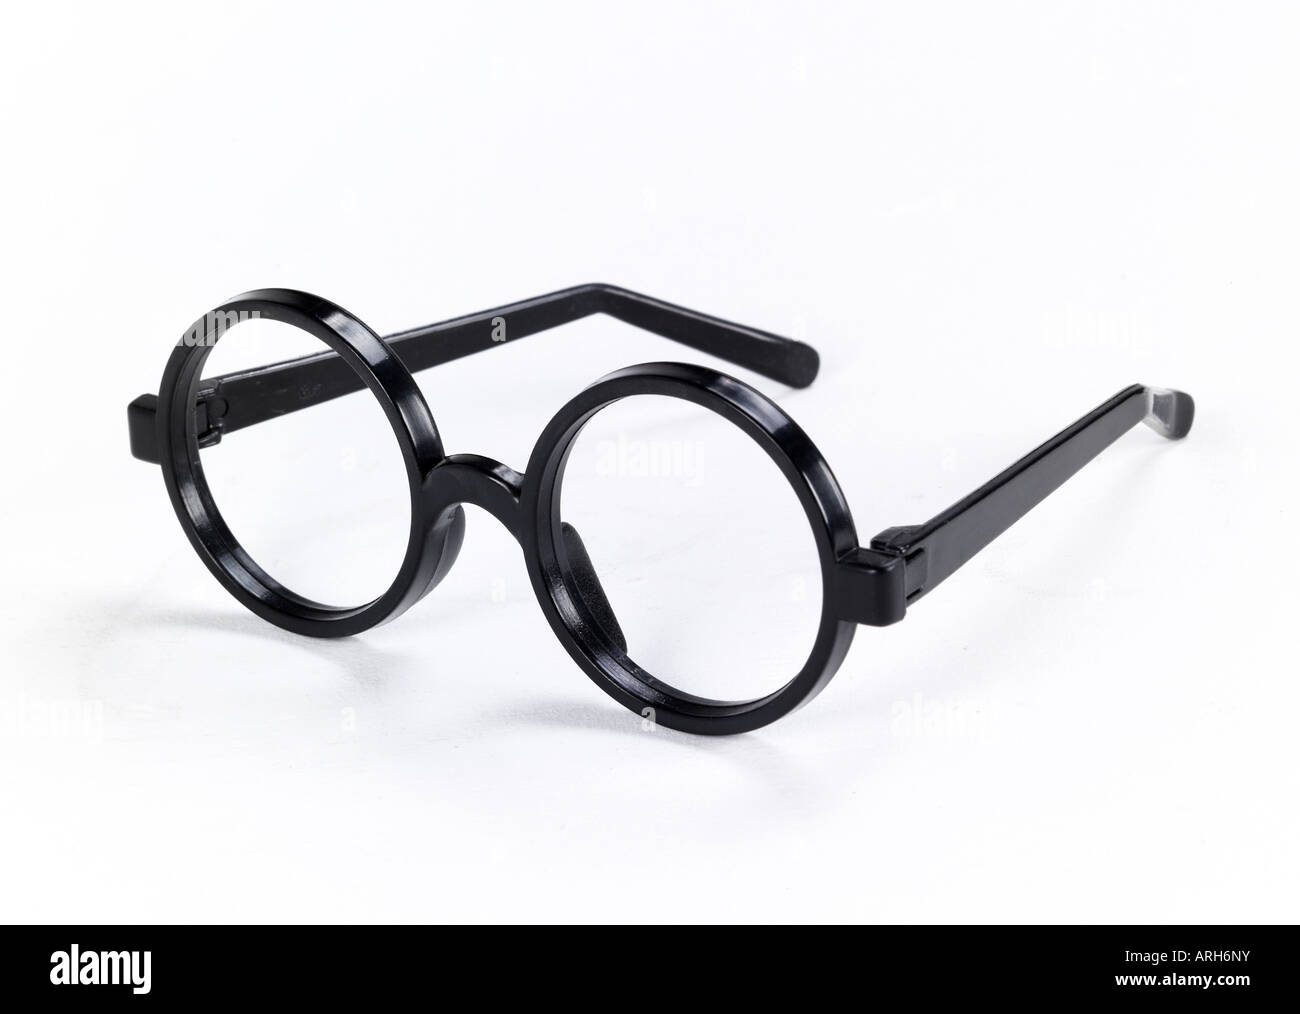 Harry potter glasses immagini e fotografie stock ad alta risoluzione - Alamy